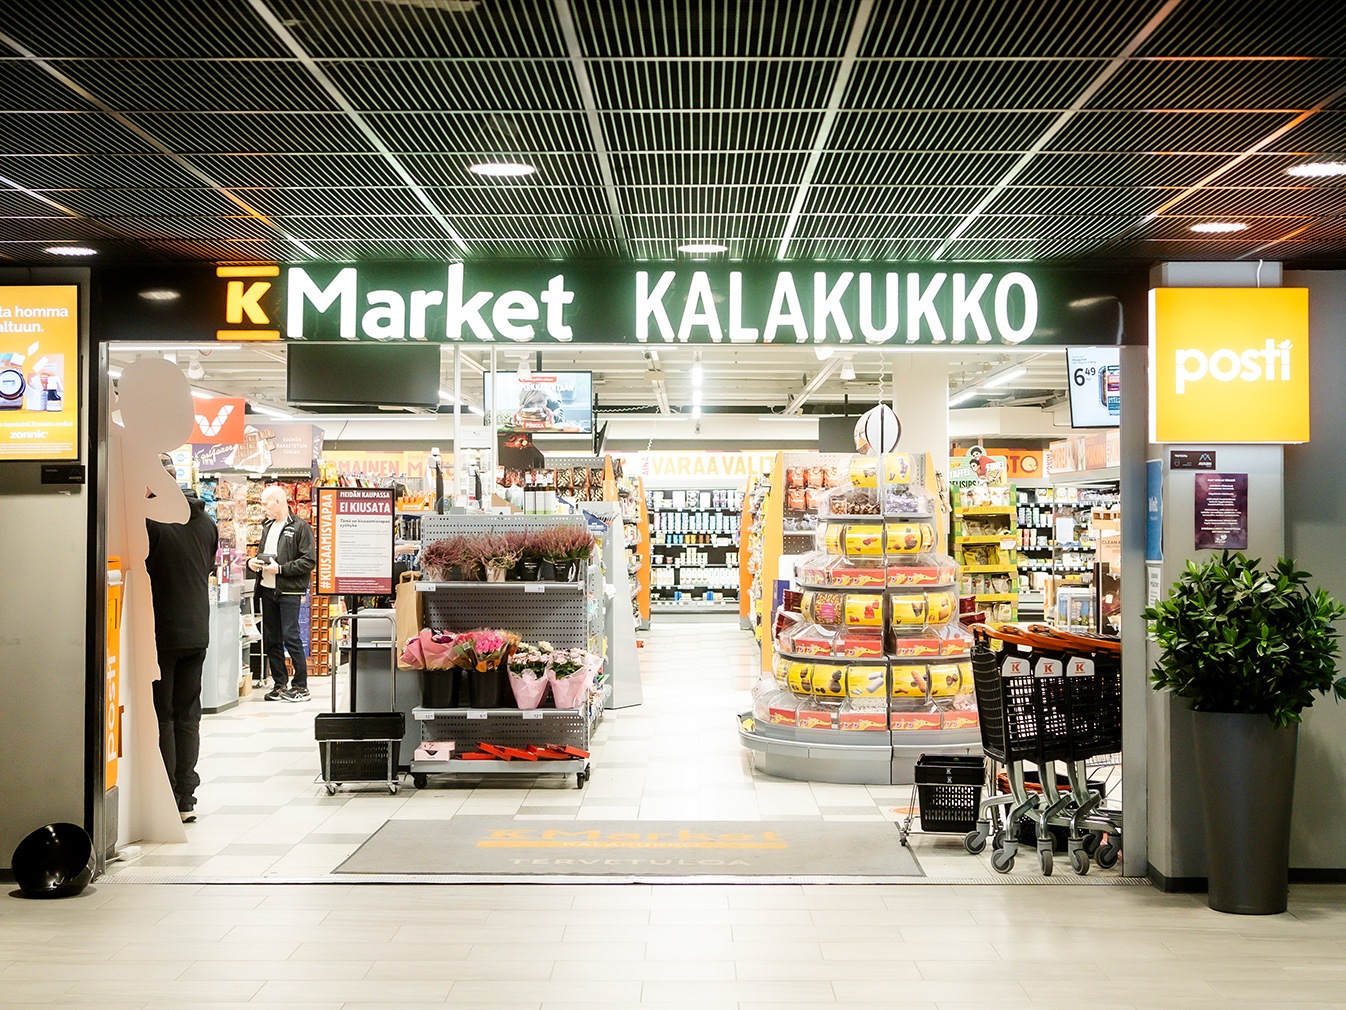 K-market Kalakukko